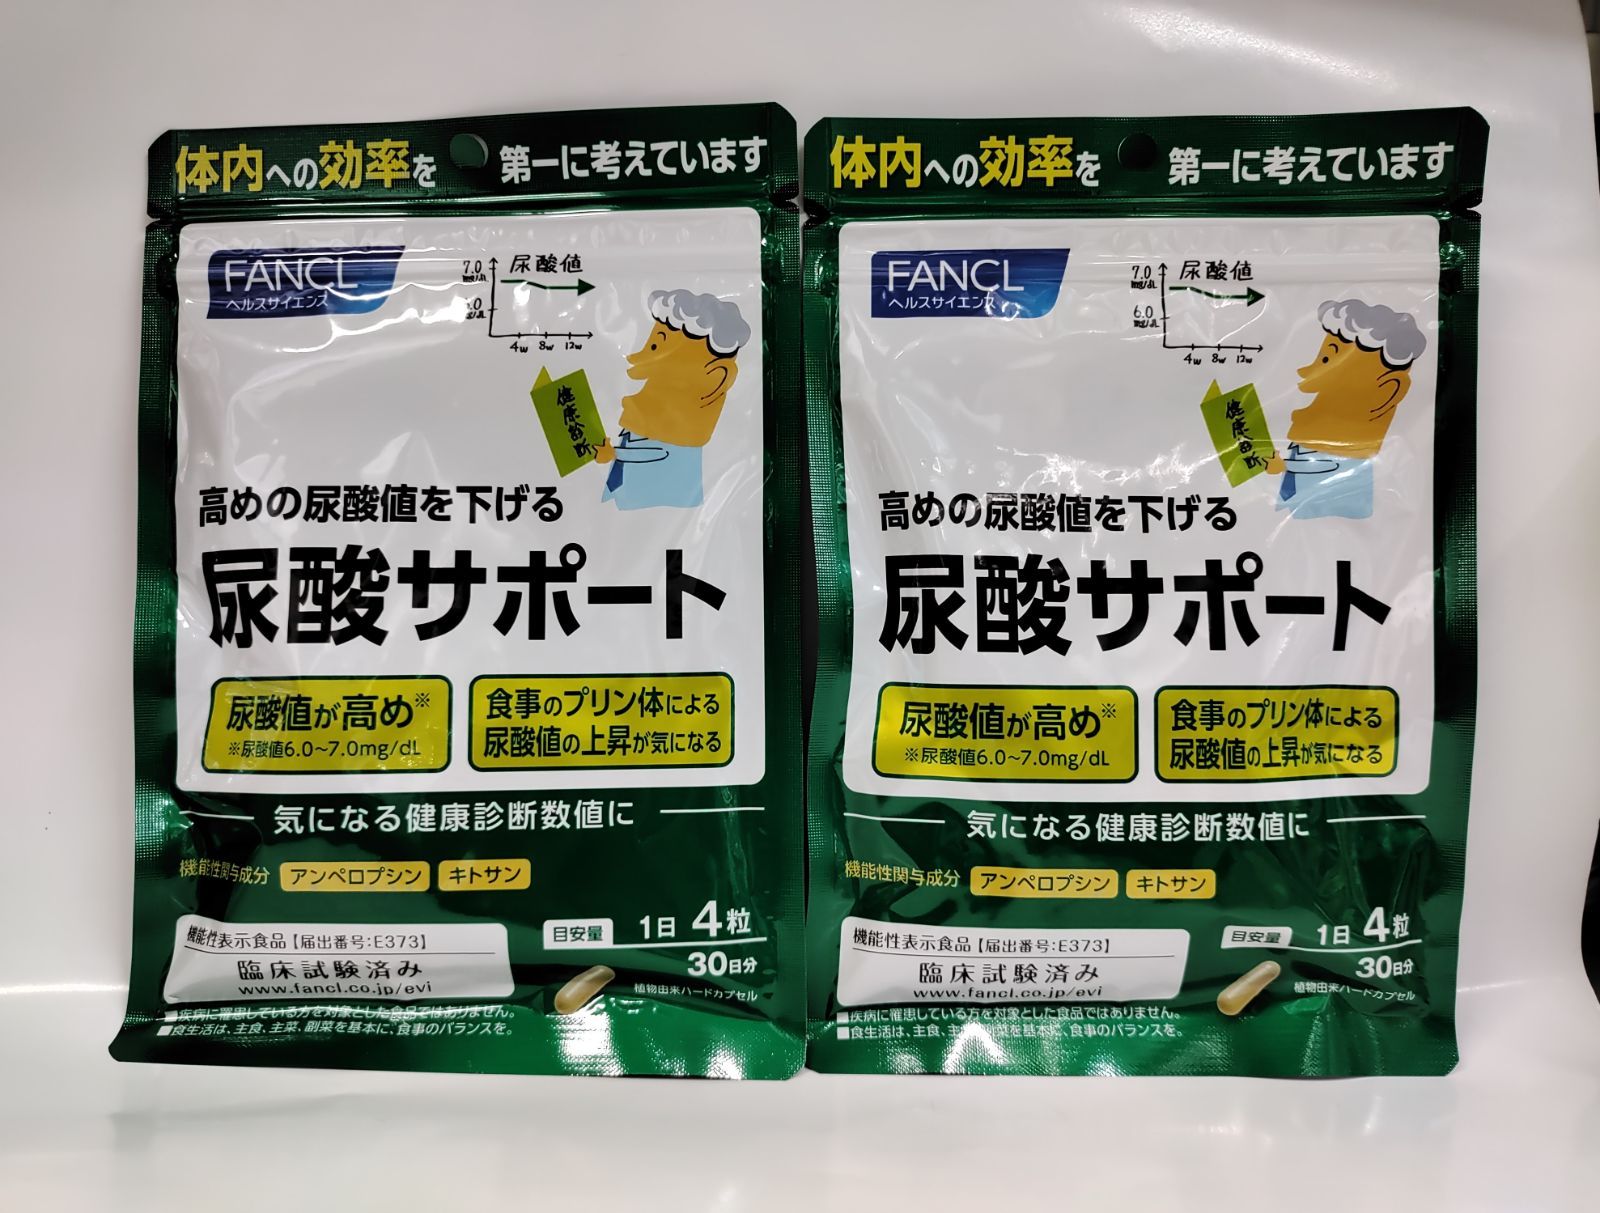 ファンケル (FANCL) 尿酸 サポート 30日分 [機能性表示食品] サプリ